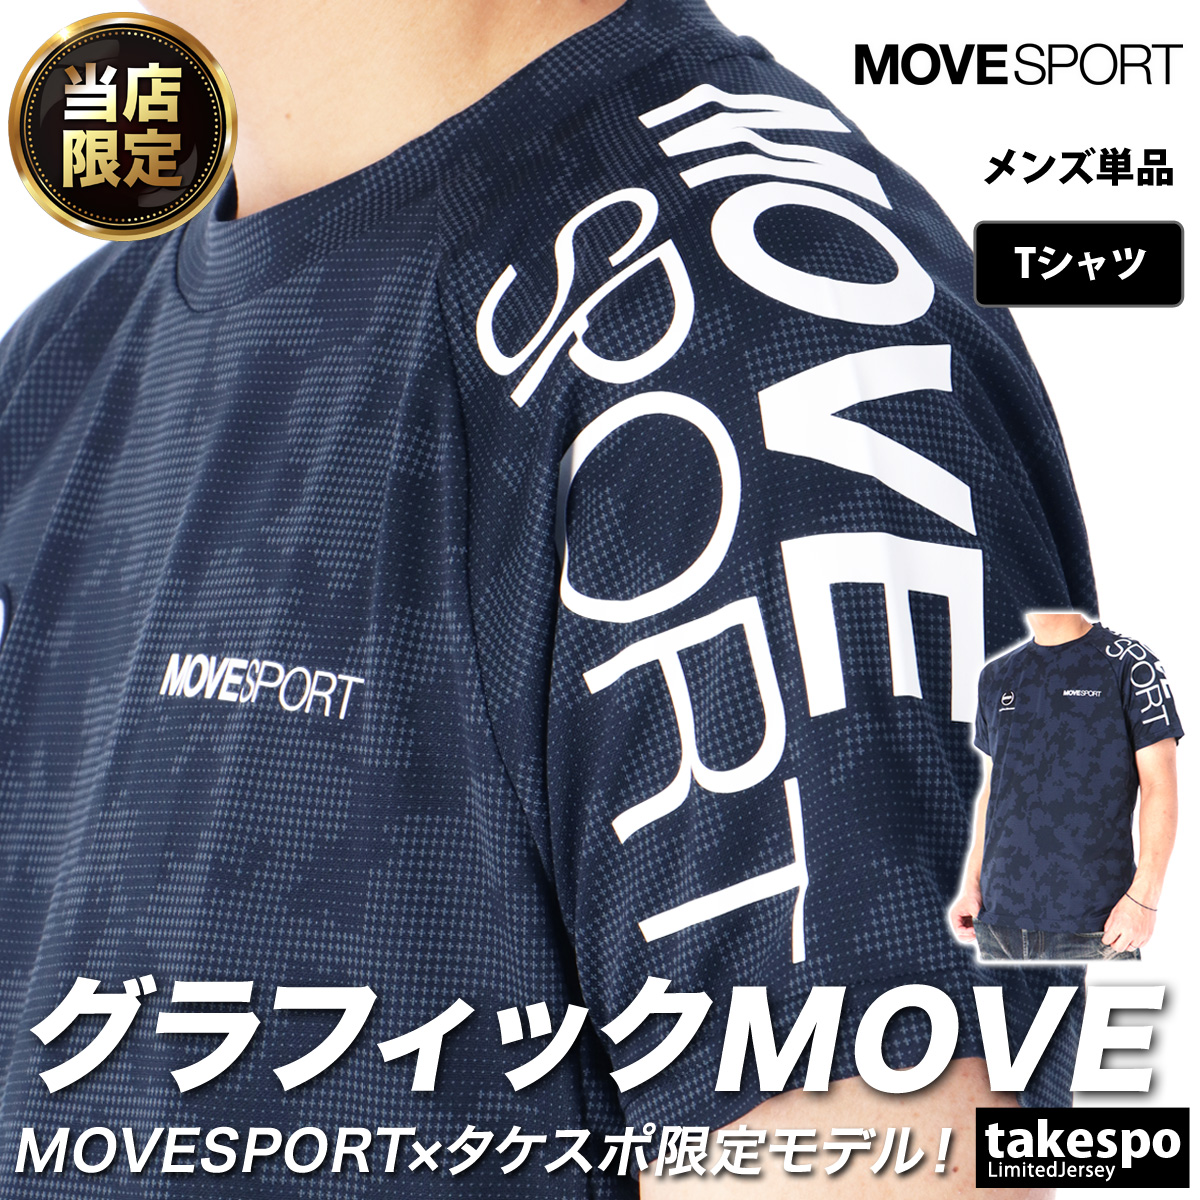 ムーブスポーツ デサント Tシャツ メンズ 上 MOVESPORT DESCENTE 取扱店舗限定 ...